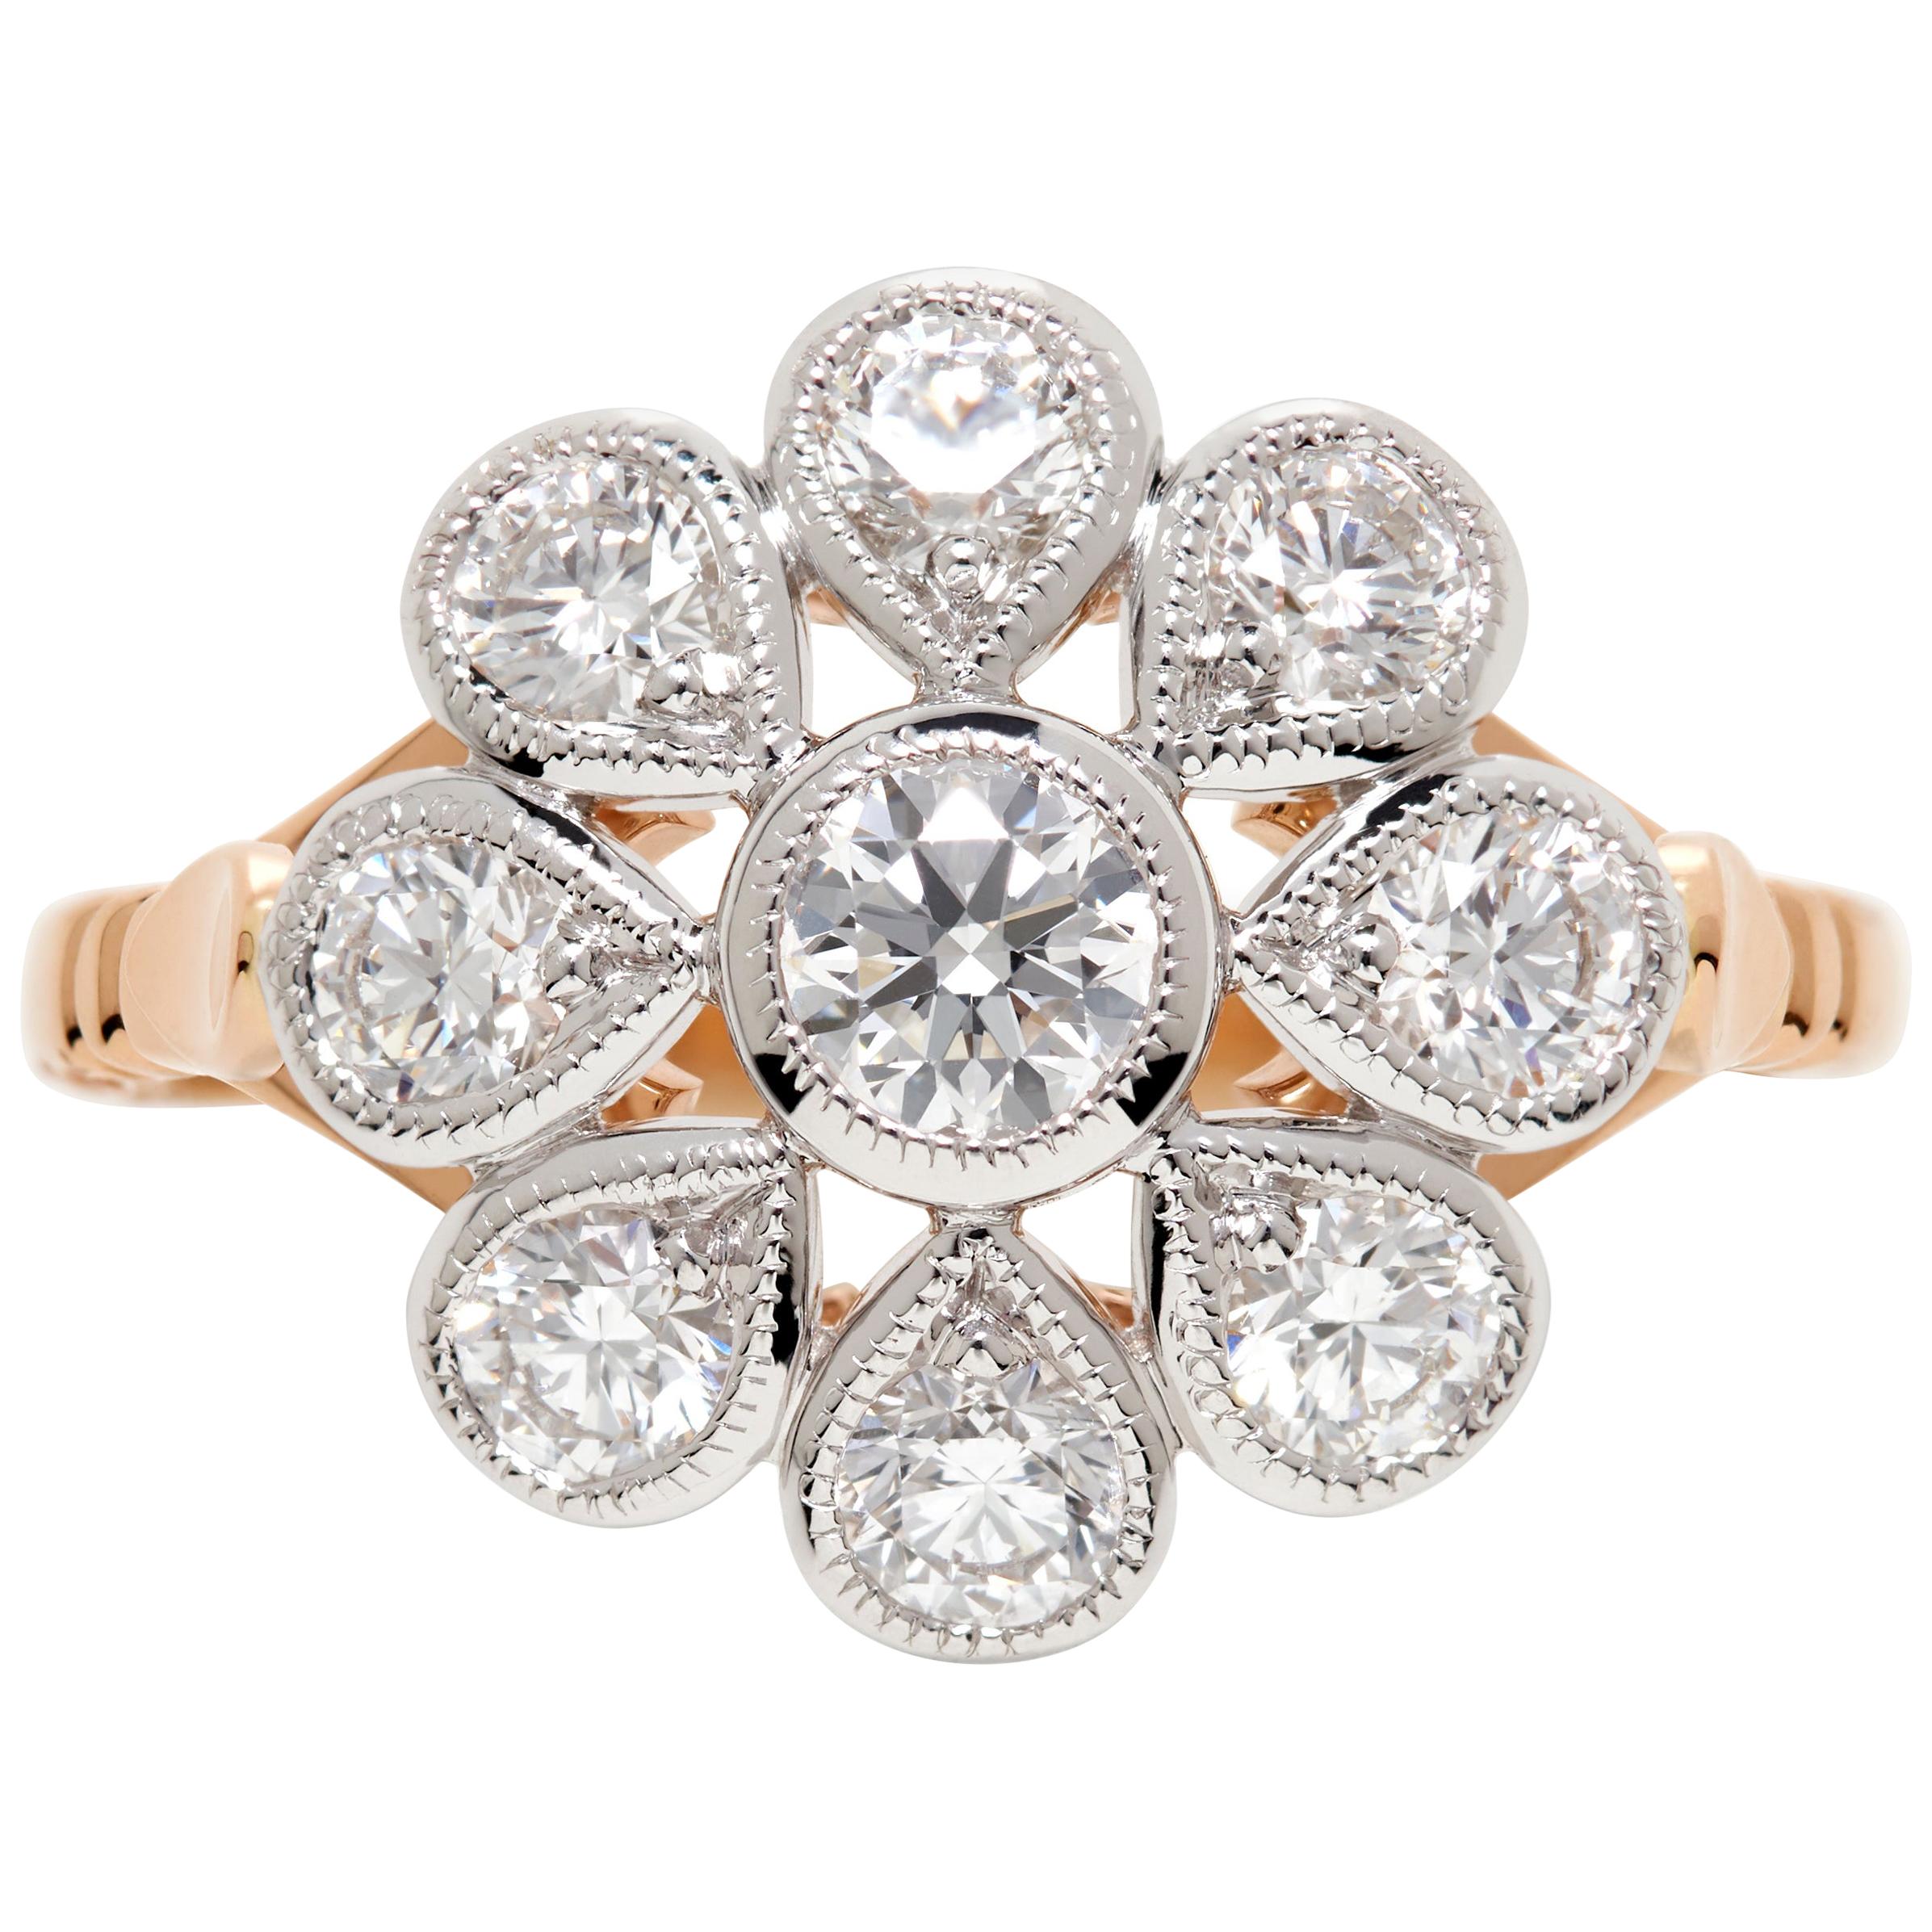 18 Karat White and Rose Gold White Diamond Dress Ring